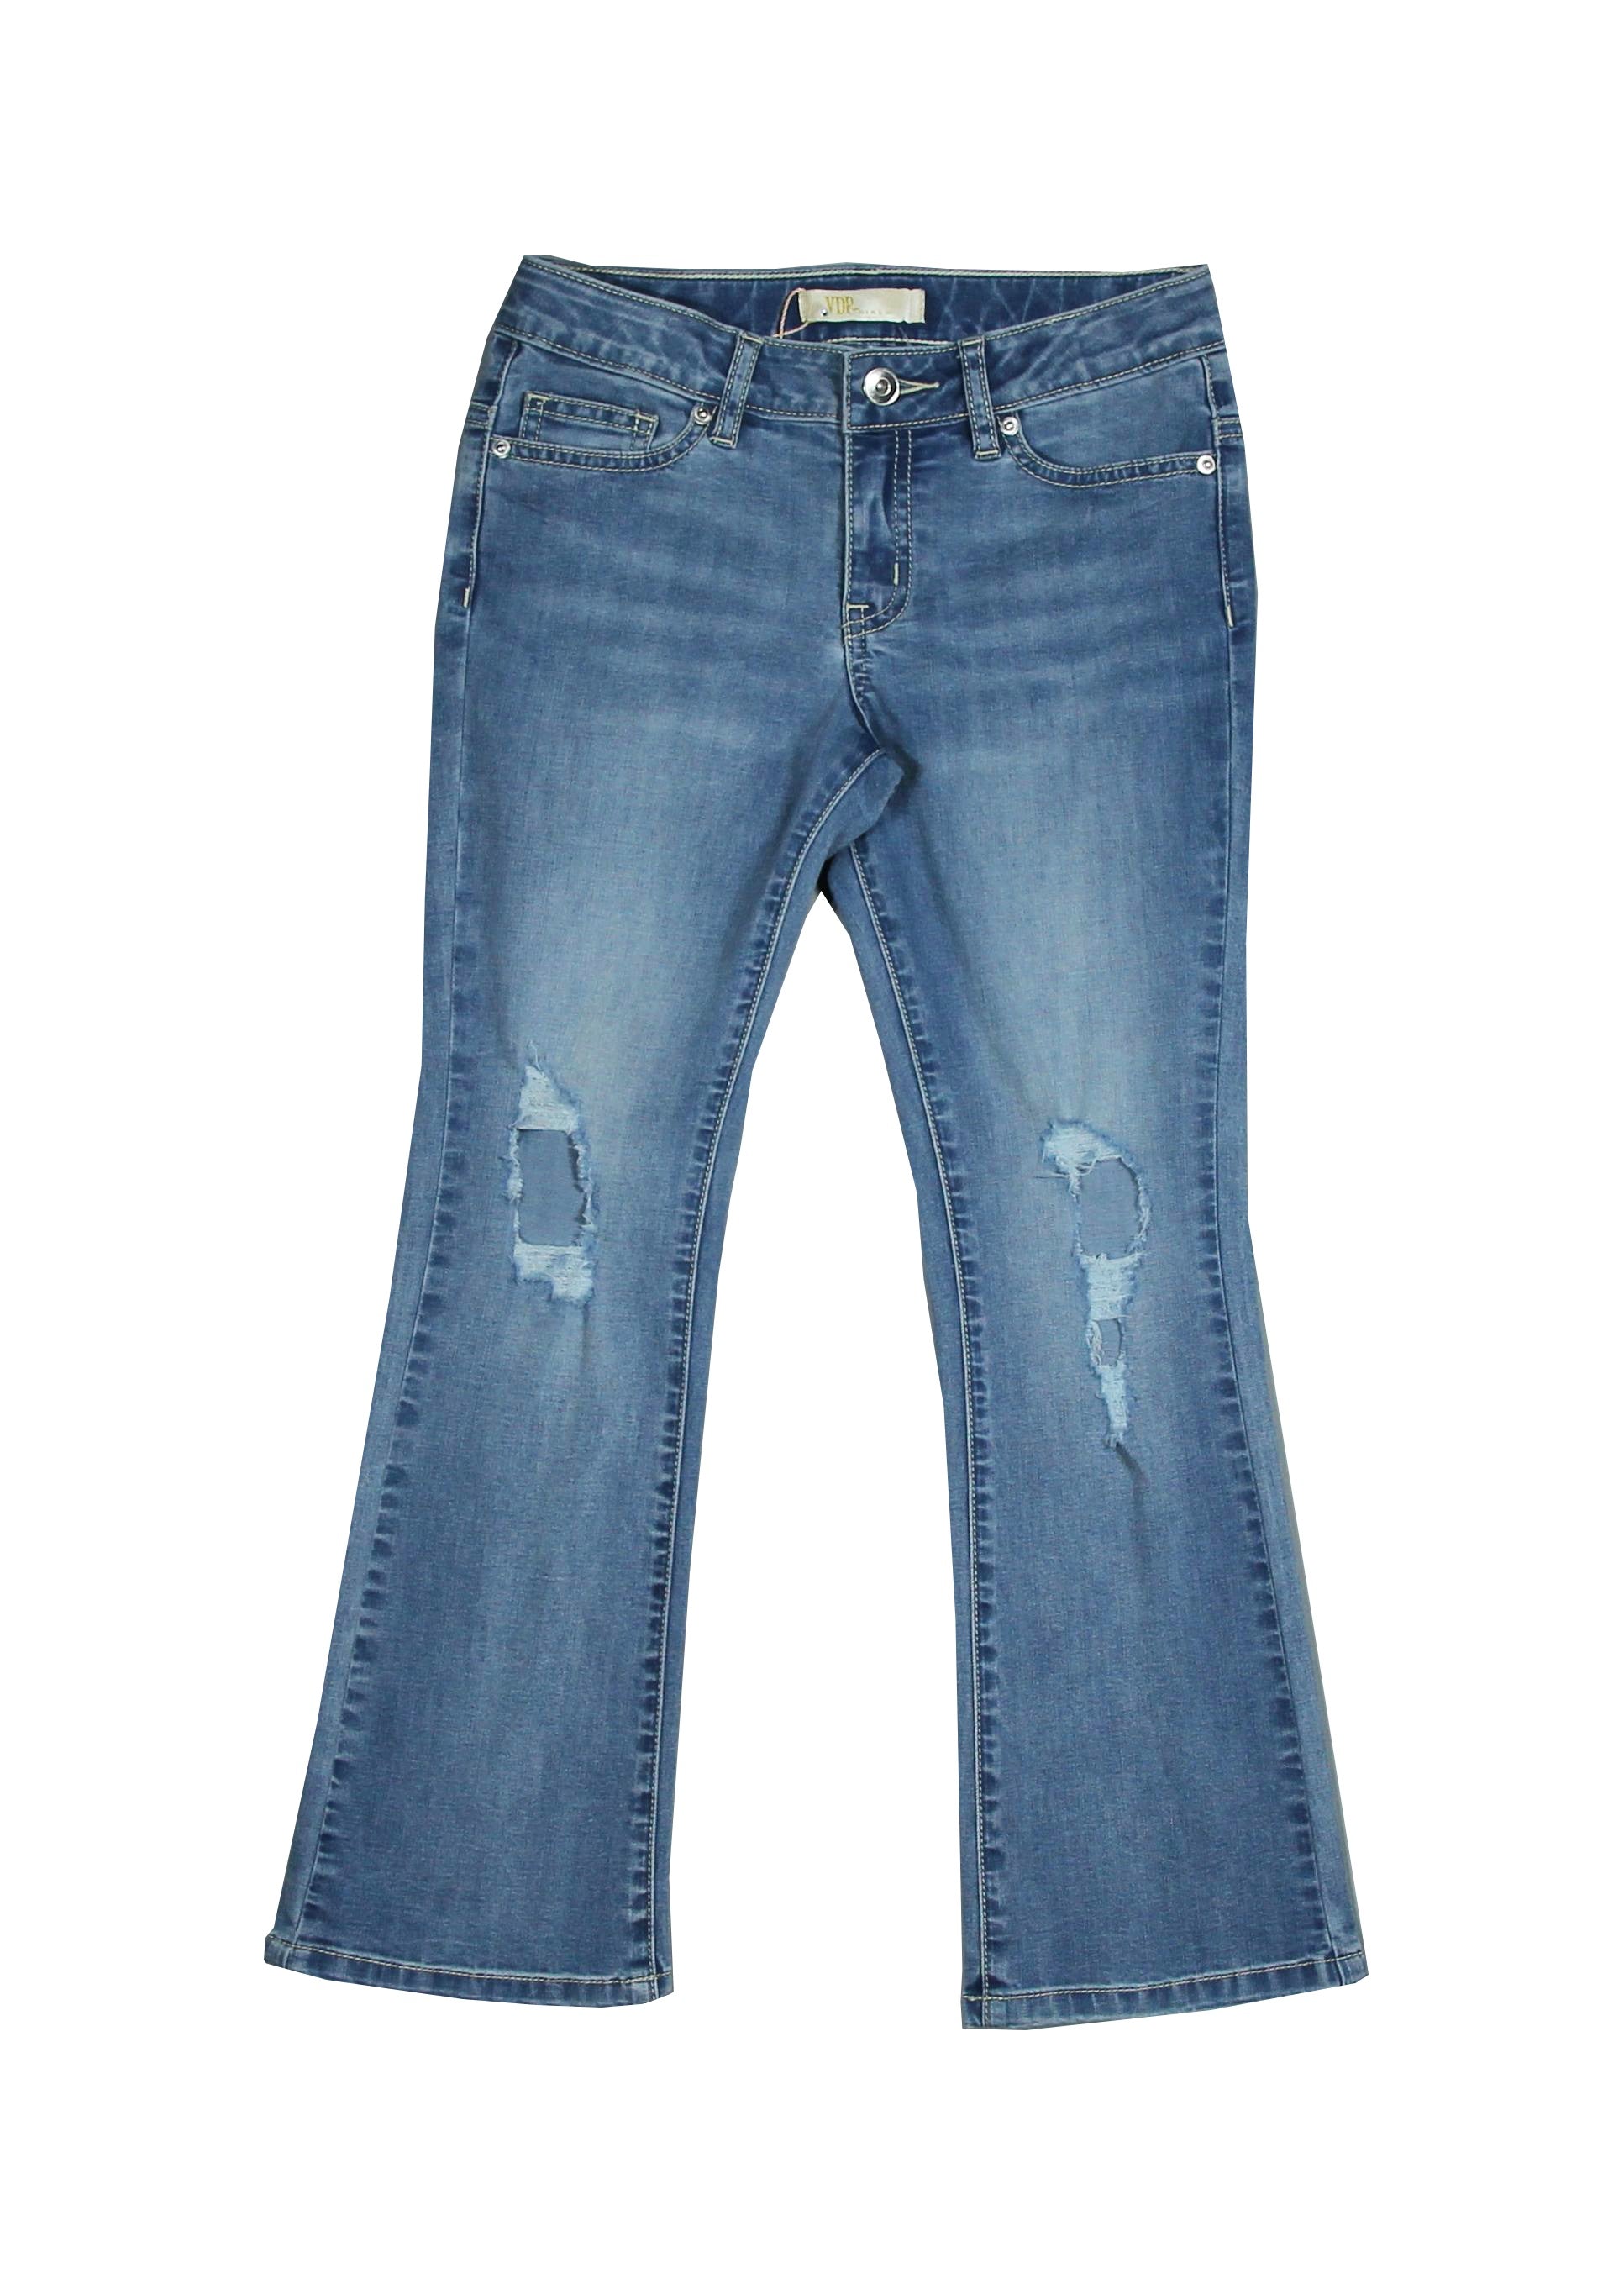 
  Jeans aus der Kinderbekleidungslinie Via Delle Perle, Modell 70er Jahre mit Größe
  verstellba...